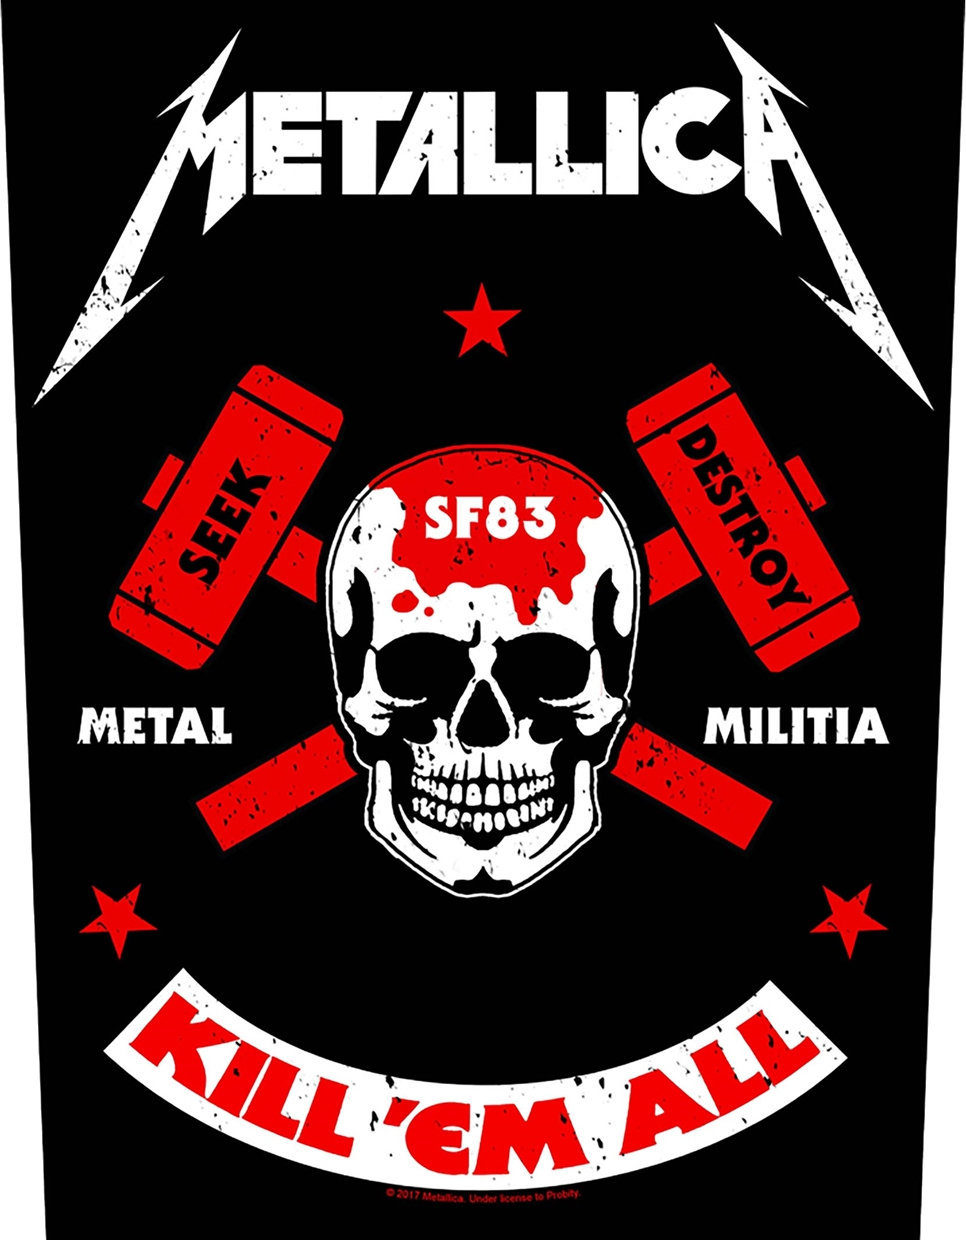 Obliža
 Metallica Metal Militia Obliža